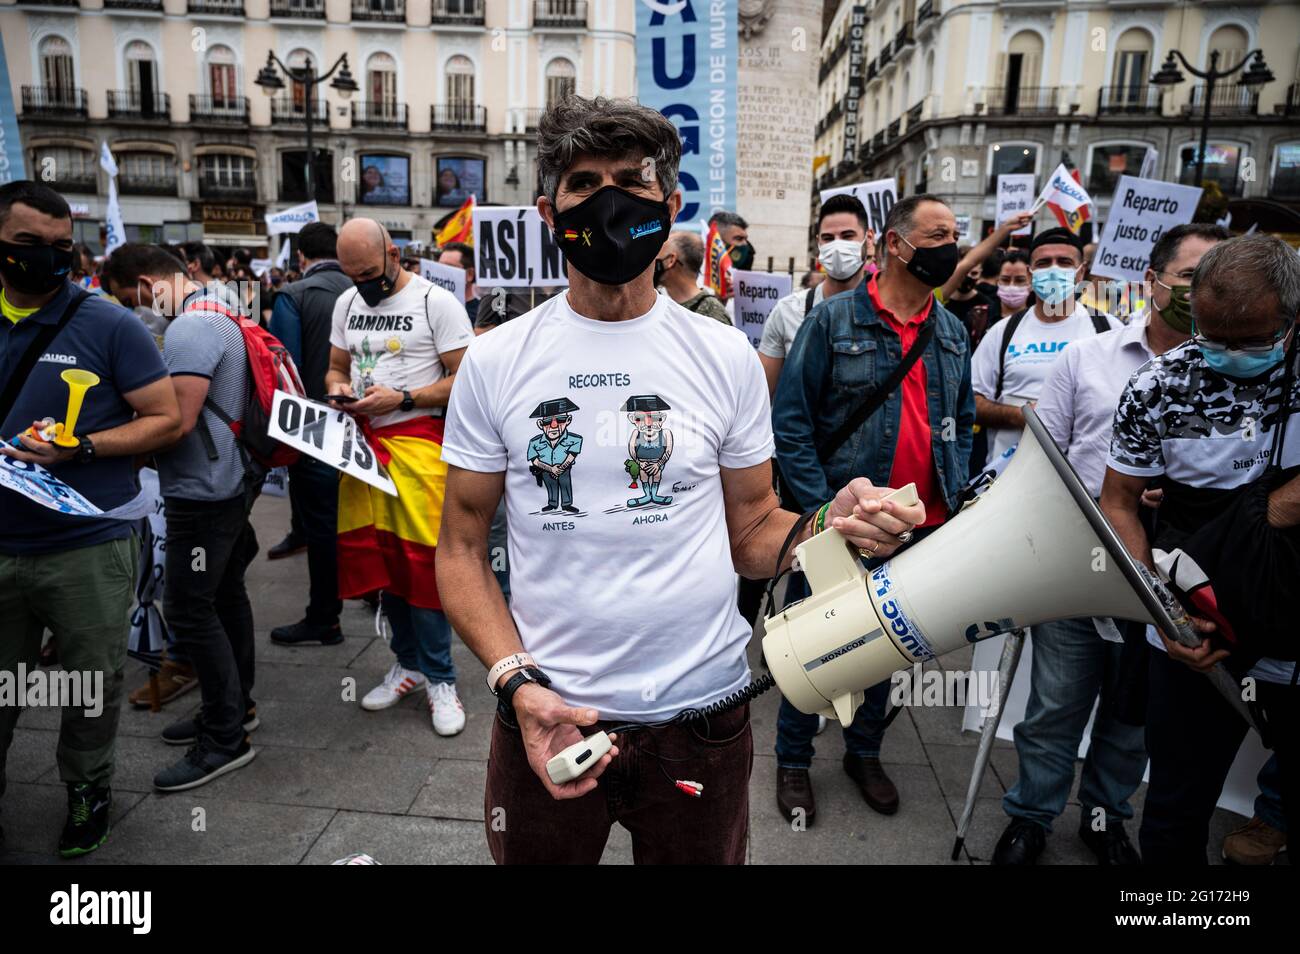 Madrid, Spanien. Juni 2021. Die Zivilgarde protestierten während einer Demonstration, um die gleichen Rechte mit den übrigen Polizeikräften zu fordern. Quelle: Marcos del Mazo/Alamy Live News Stockfoto